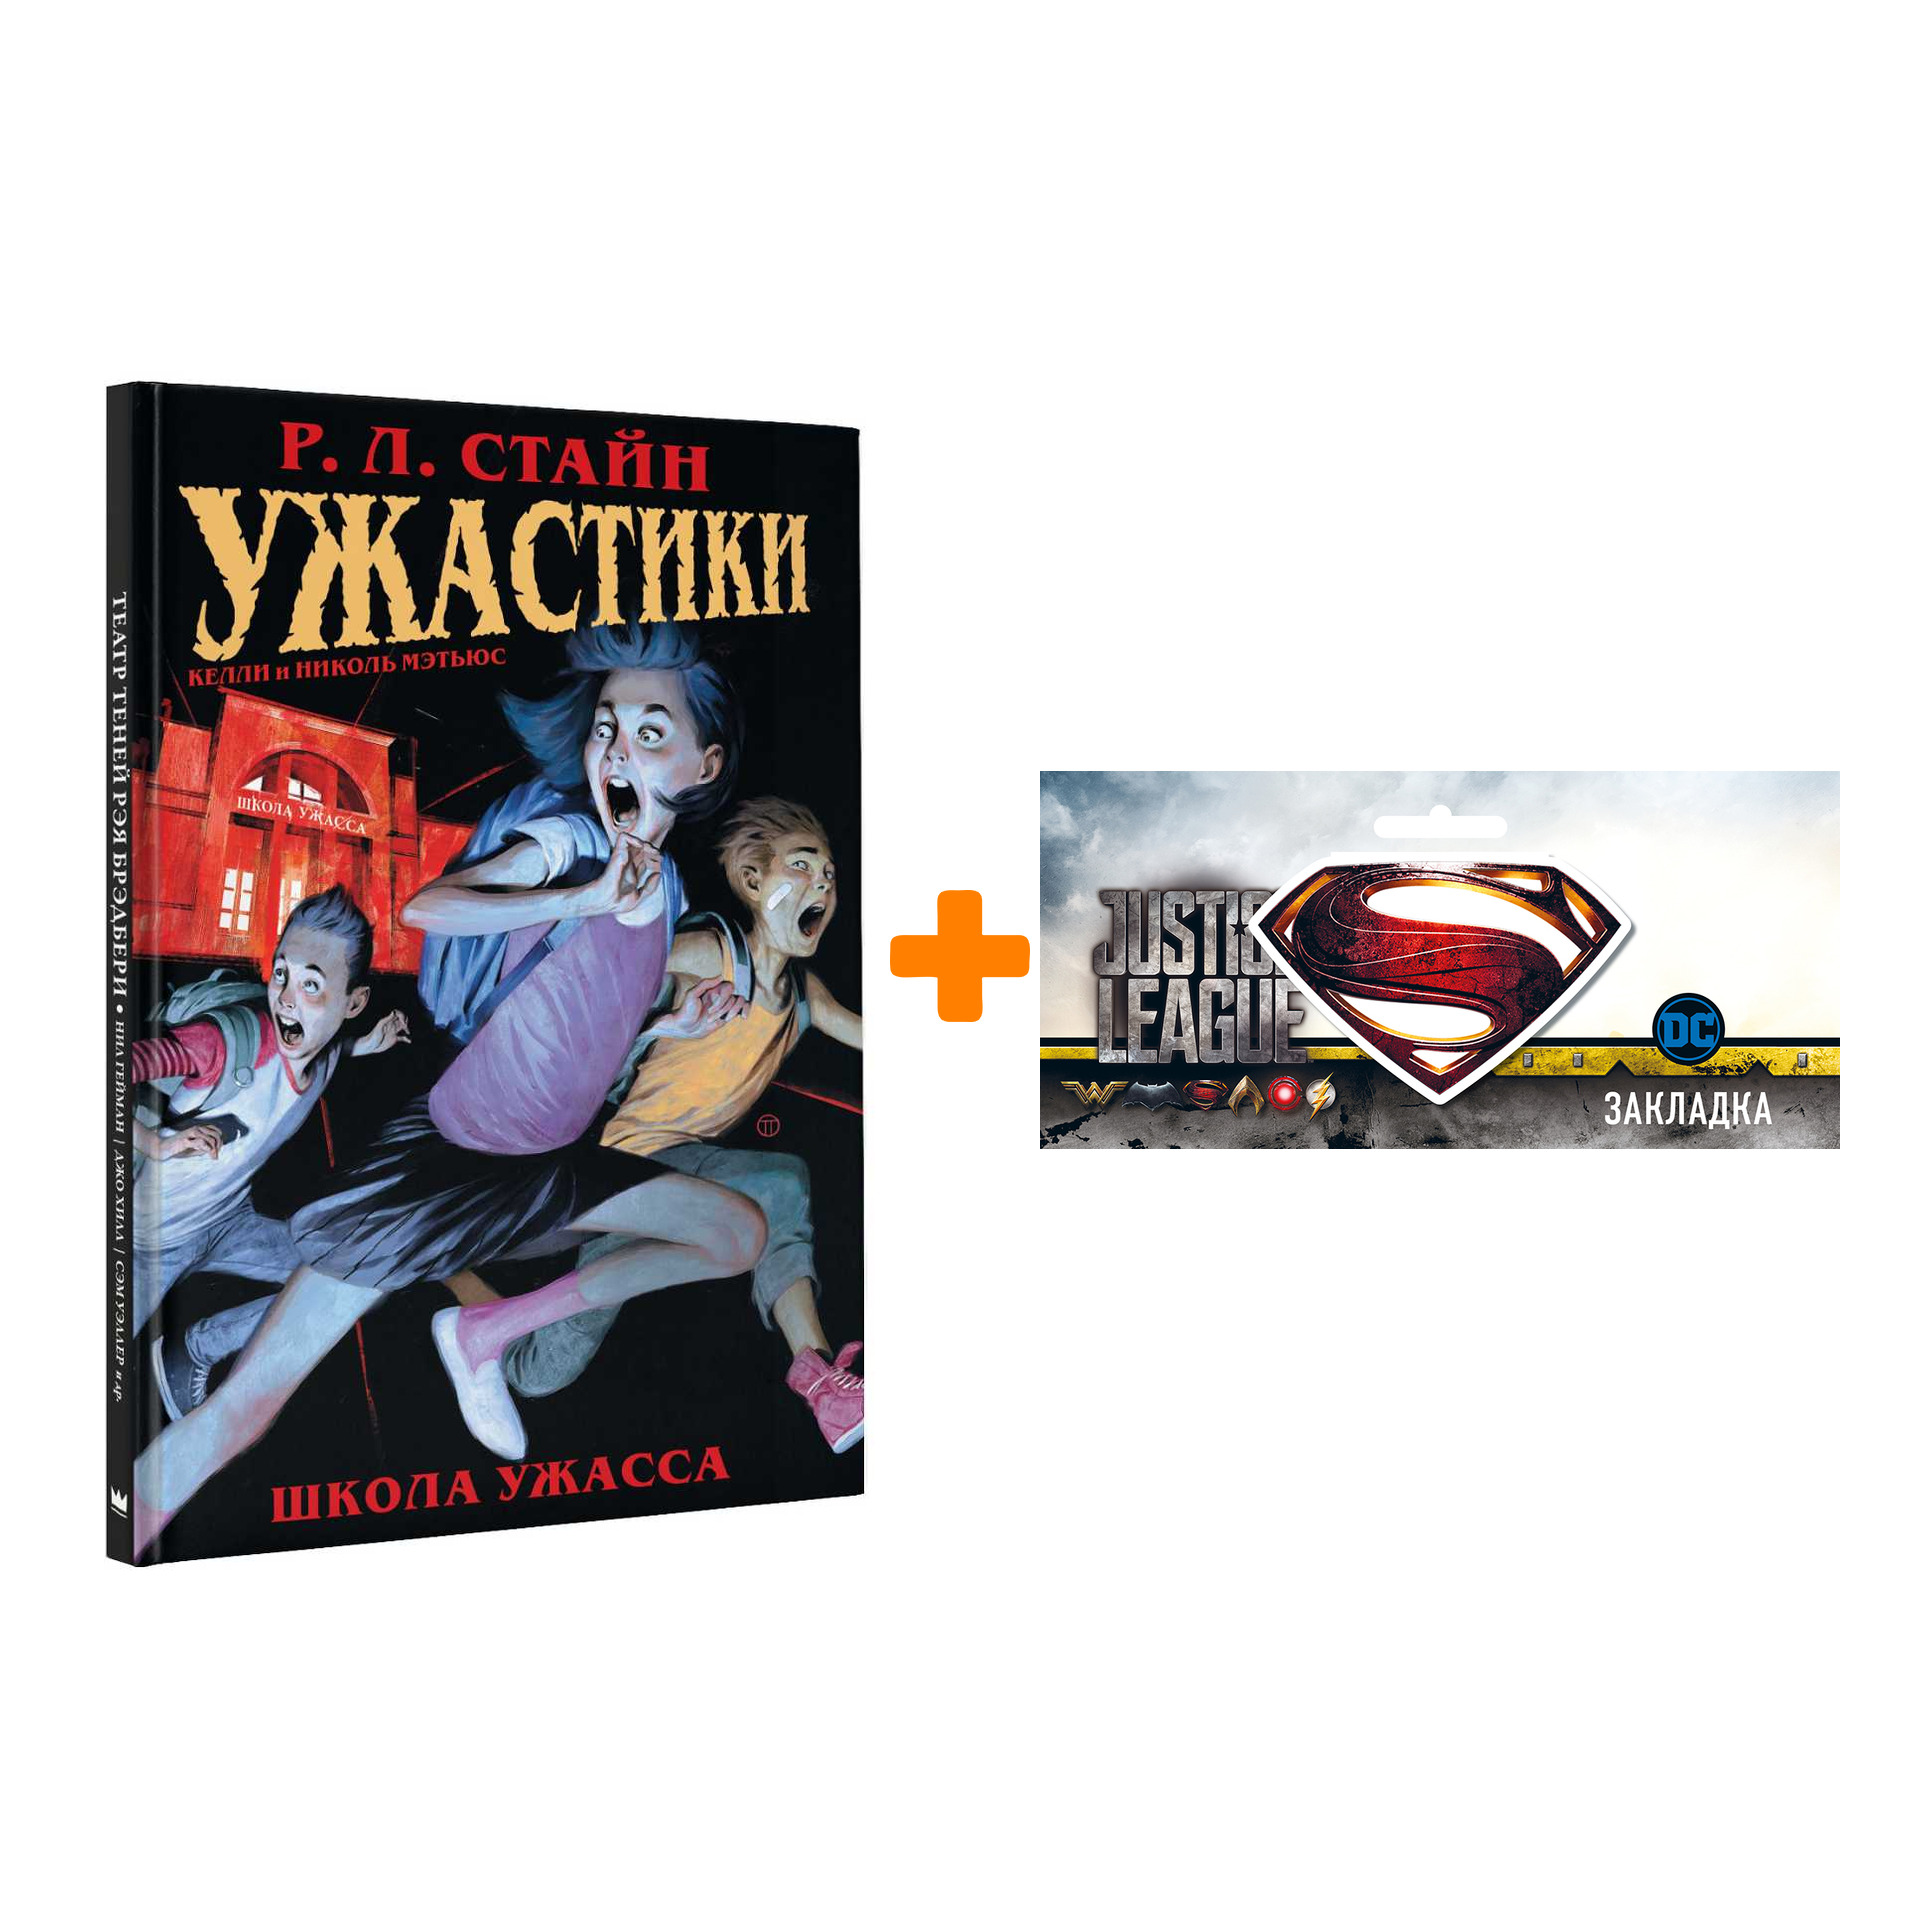 Набор Комикс Ужастики Школа Ужасса + Закладка DC Justice League Superman магнитная